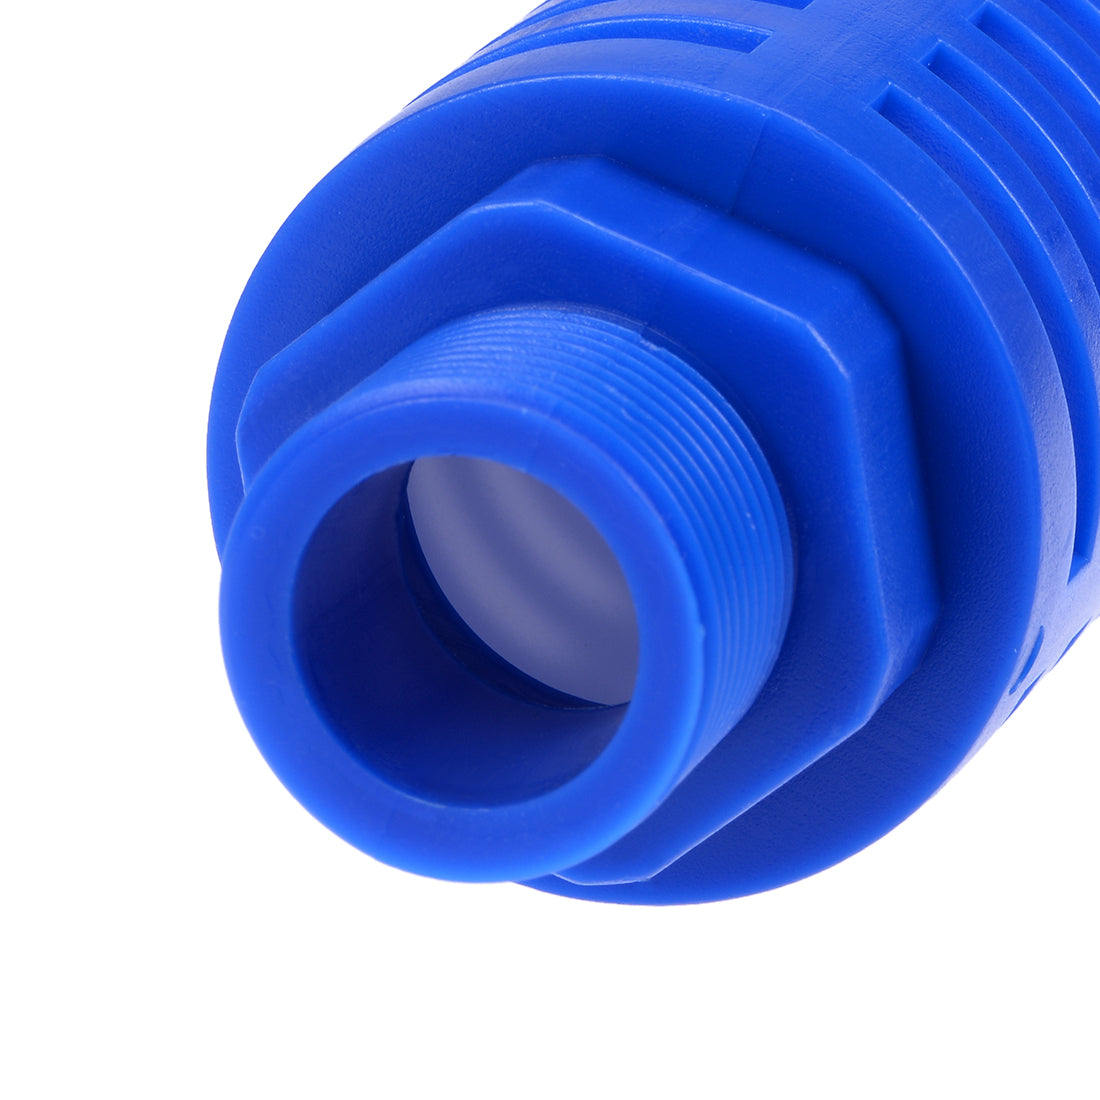 uxcell Uxcell Plastic Pneumatic Muffler Exhaust Air Line Silencer 3/4 PT Blue, 2pcs